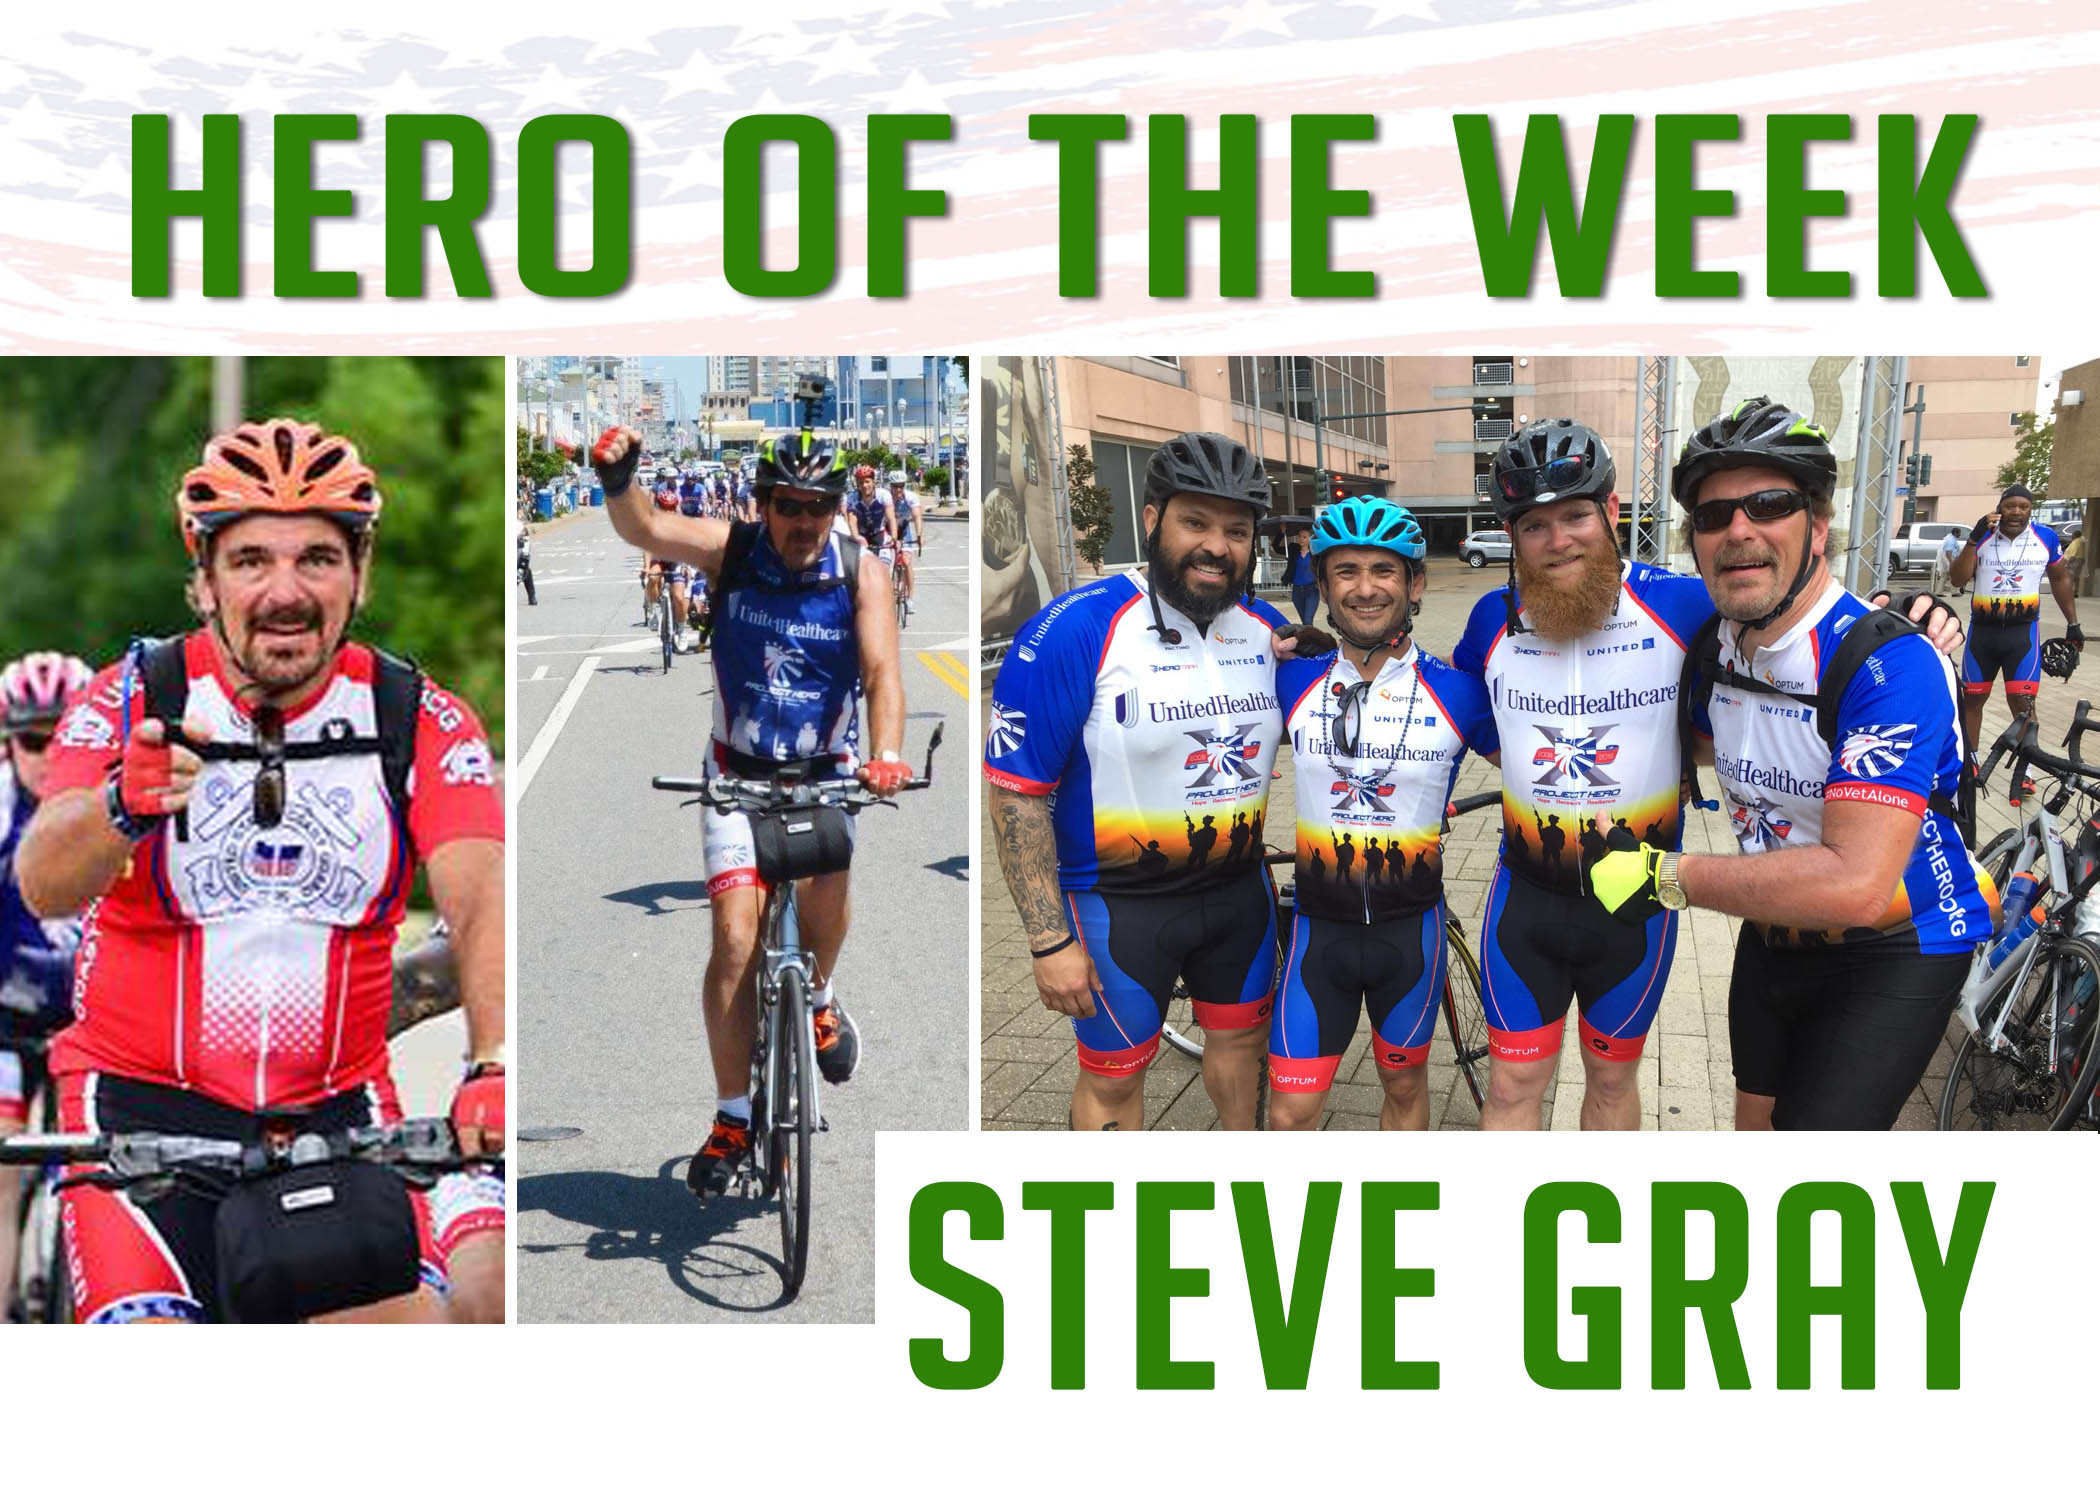 Hero of the Week: Steve Gray